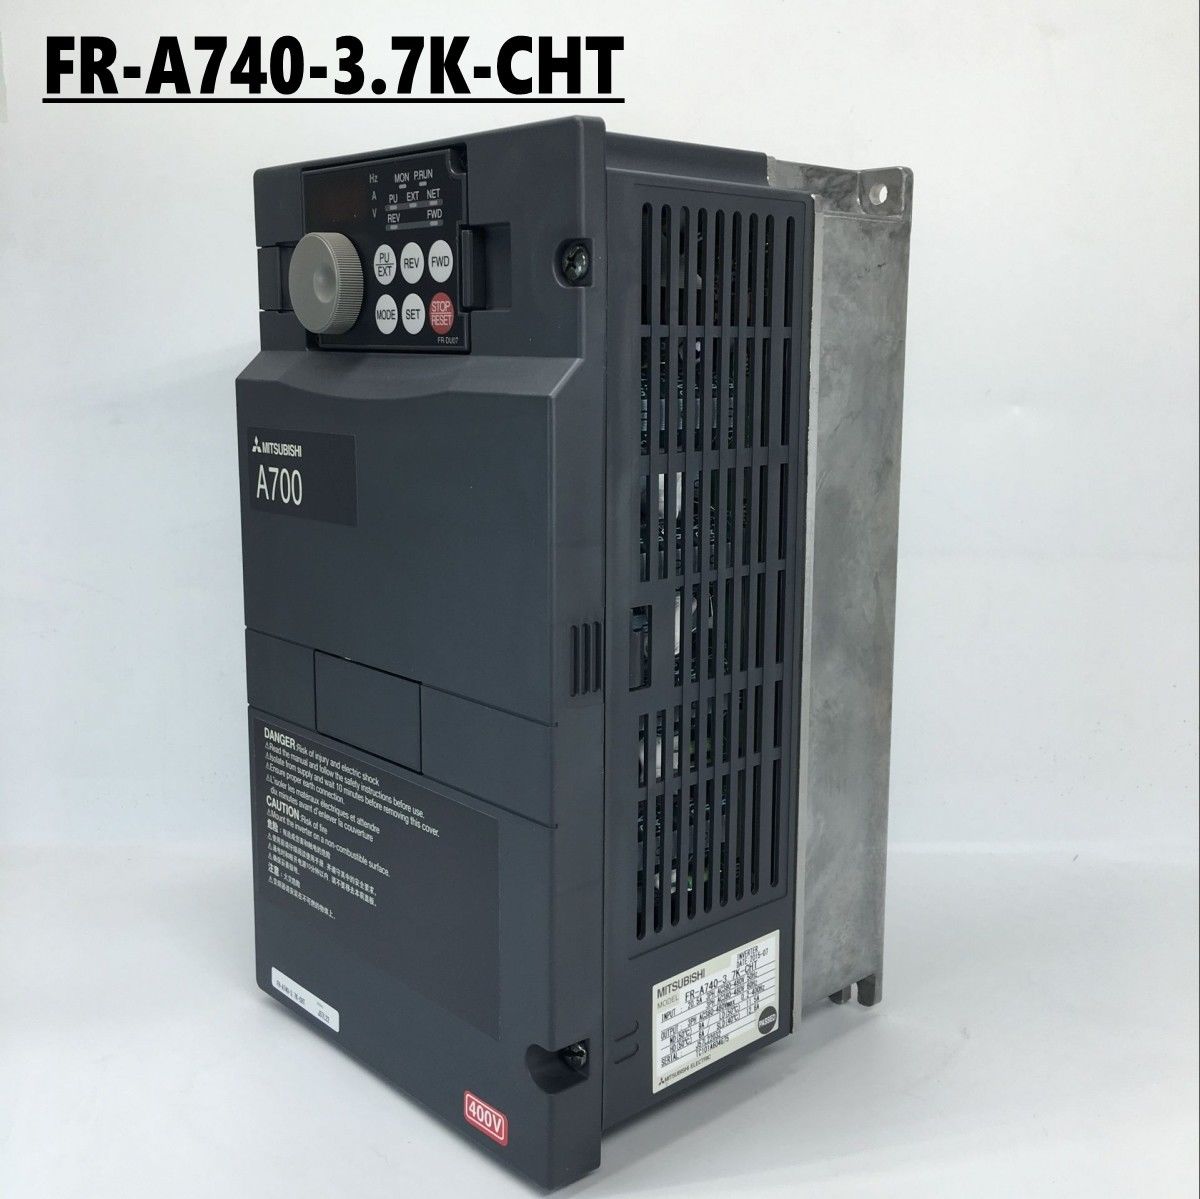 New MITSUBISHI Transducers FR-A740-3.7K-CHT 380V 3.7KW IN BOX FRA7403.7KCHT - zum Schließen ins Bild klicken